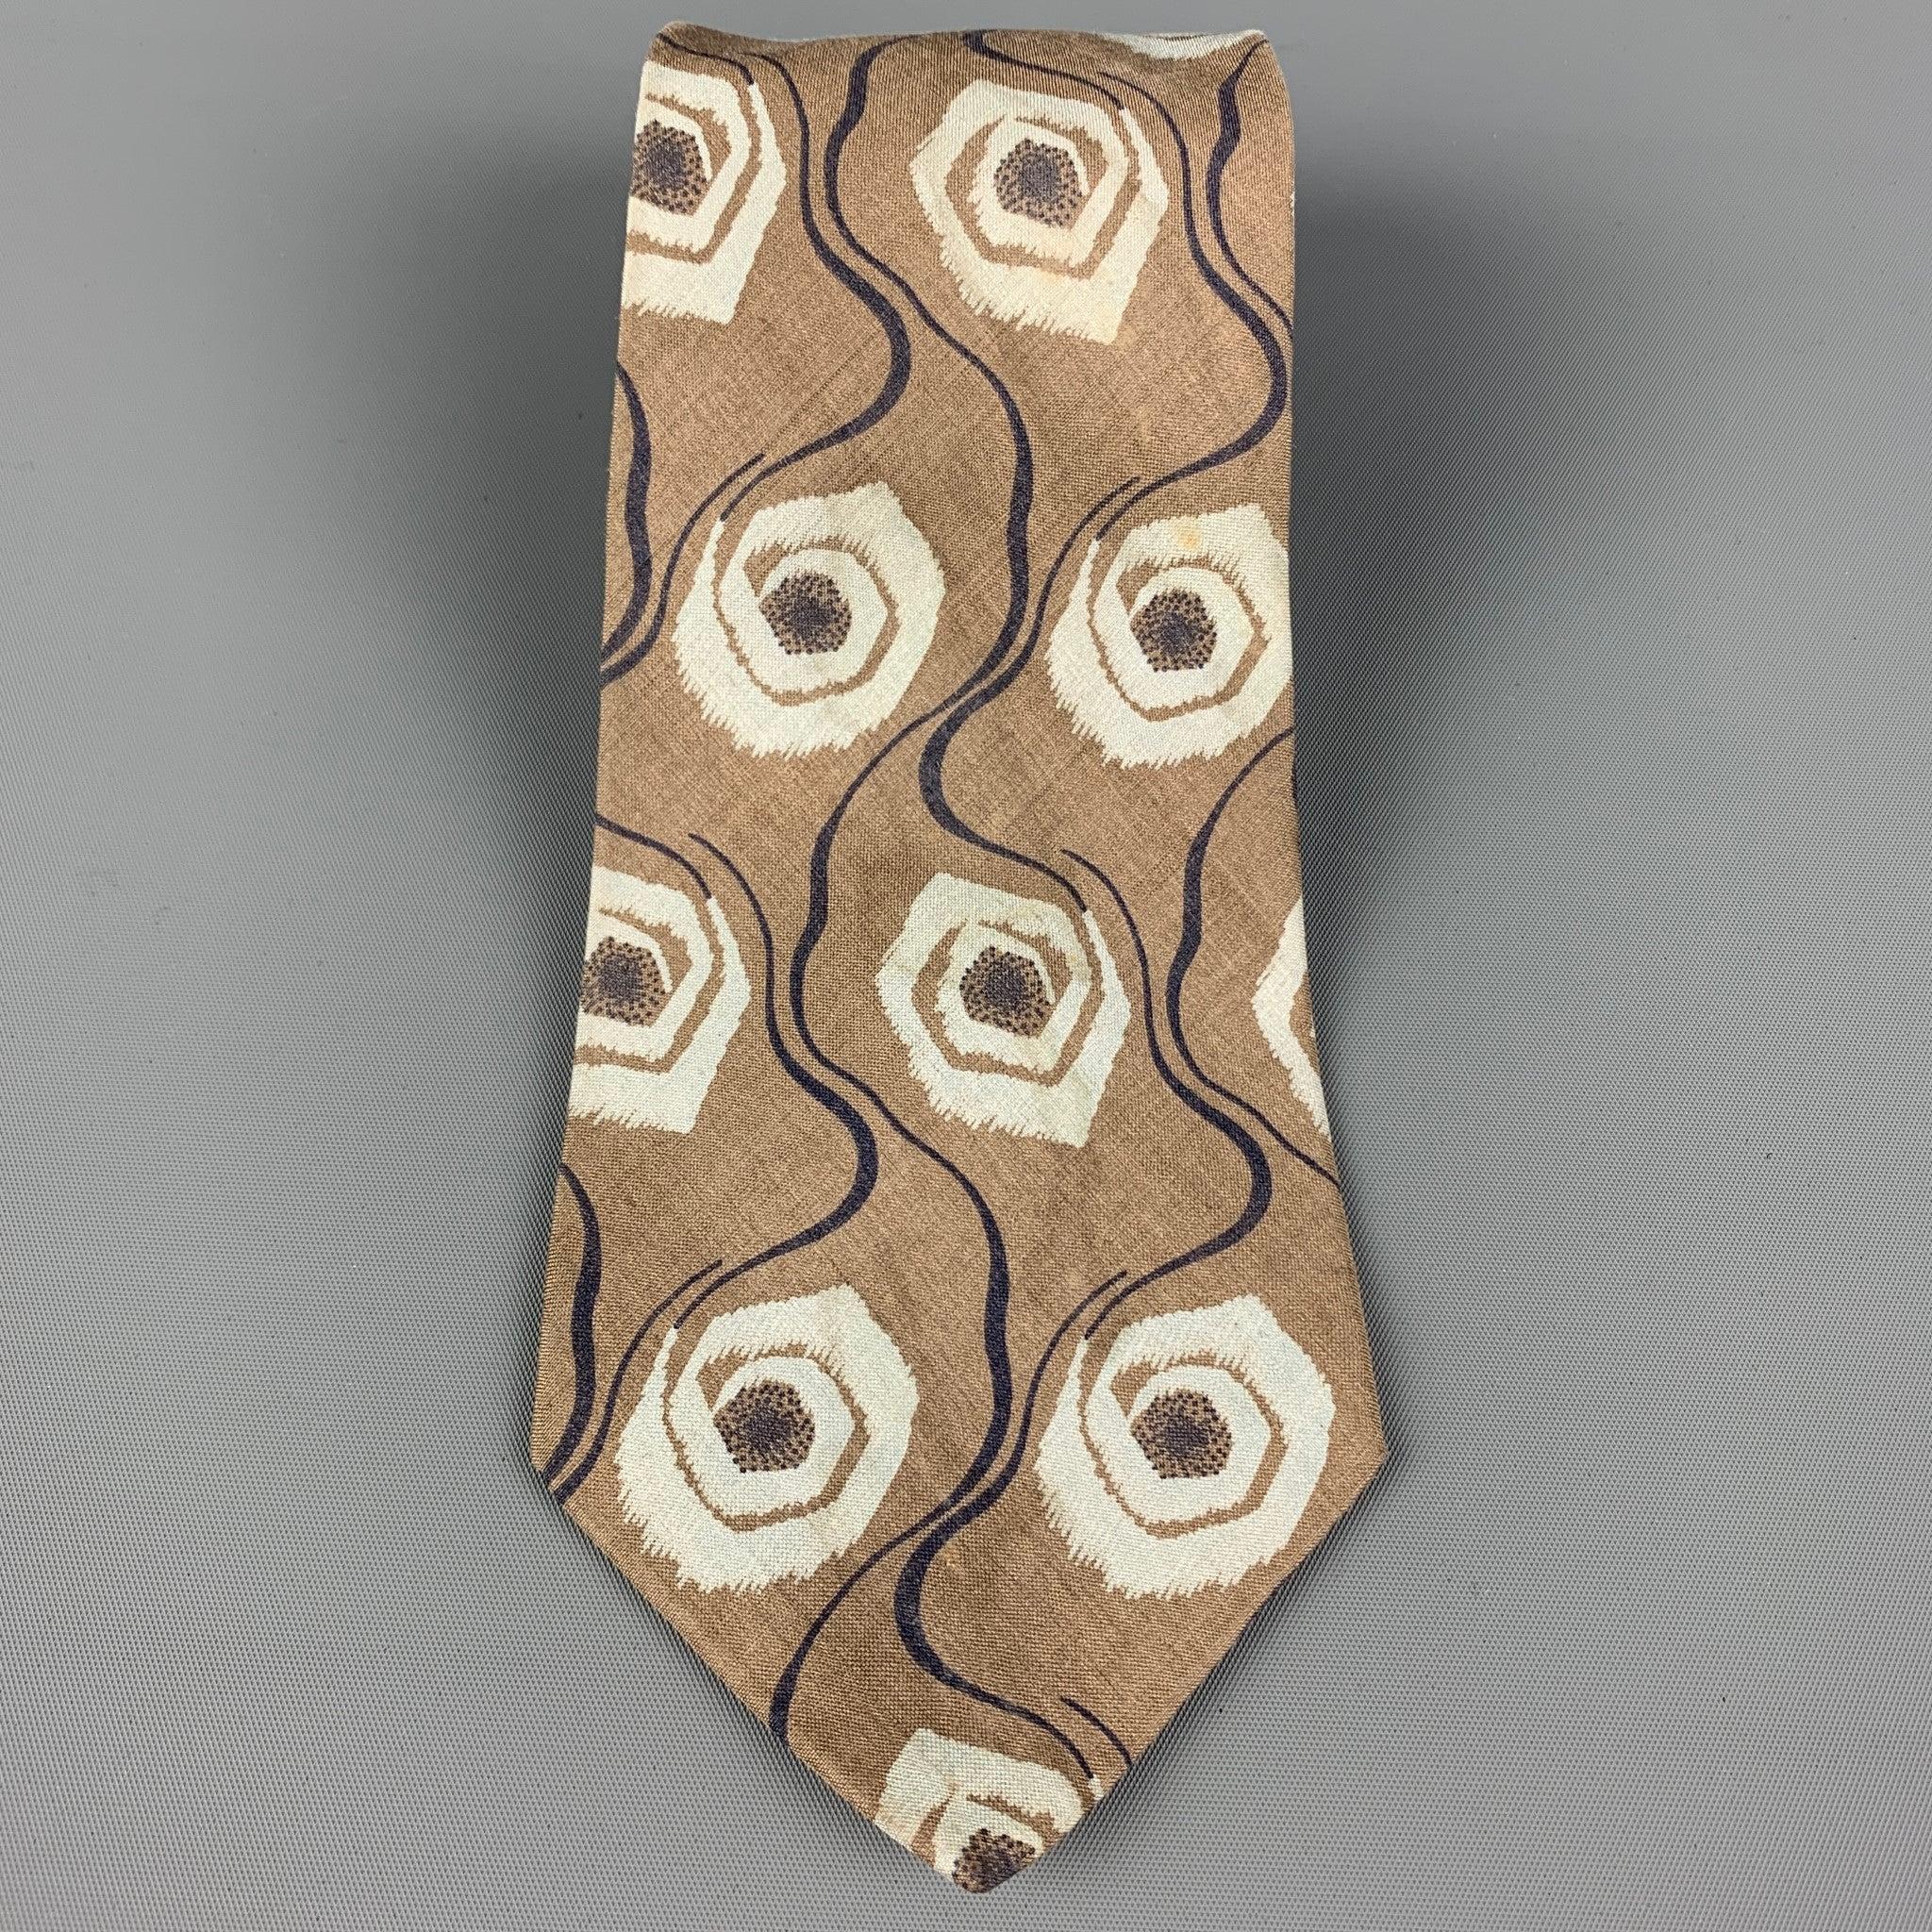 GIORGIO ARMANI
Krawatte aus khakifarbenem Seidenköper mit abstraktem Allover-Druck. Hergestellt in Italien. Sehr guter gebrauchter Zustand. 

Abmessungen: 
  Breite: 3,5 Länge: 55 Zoll 
  
  
 
Referenz: 120056
Kategorie: Krawatte
Mehr Details
   